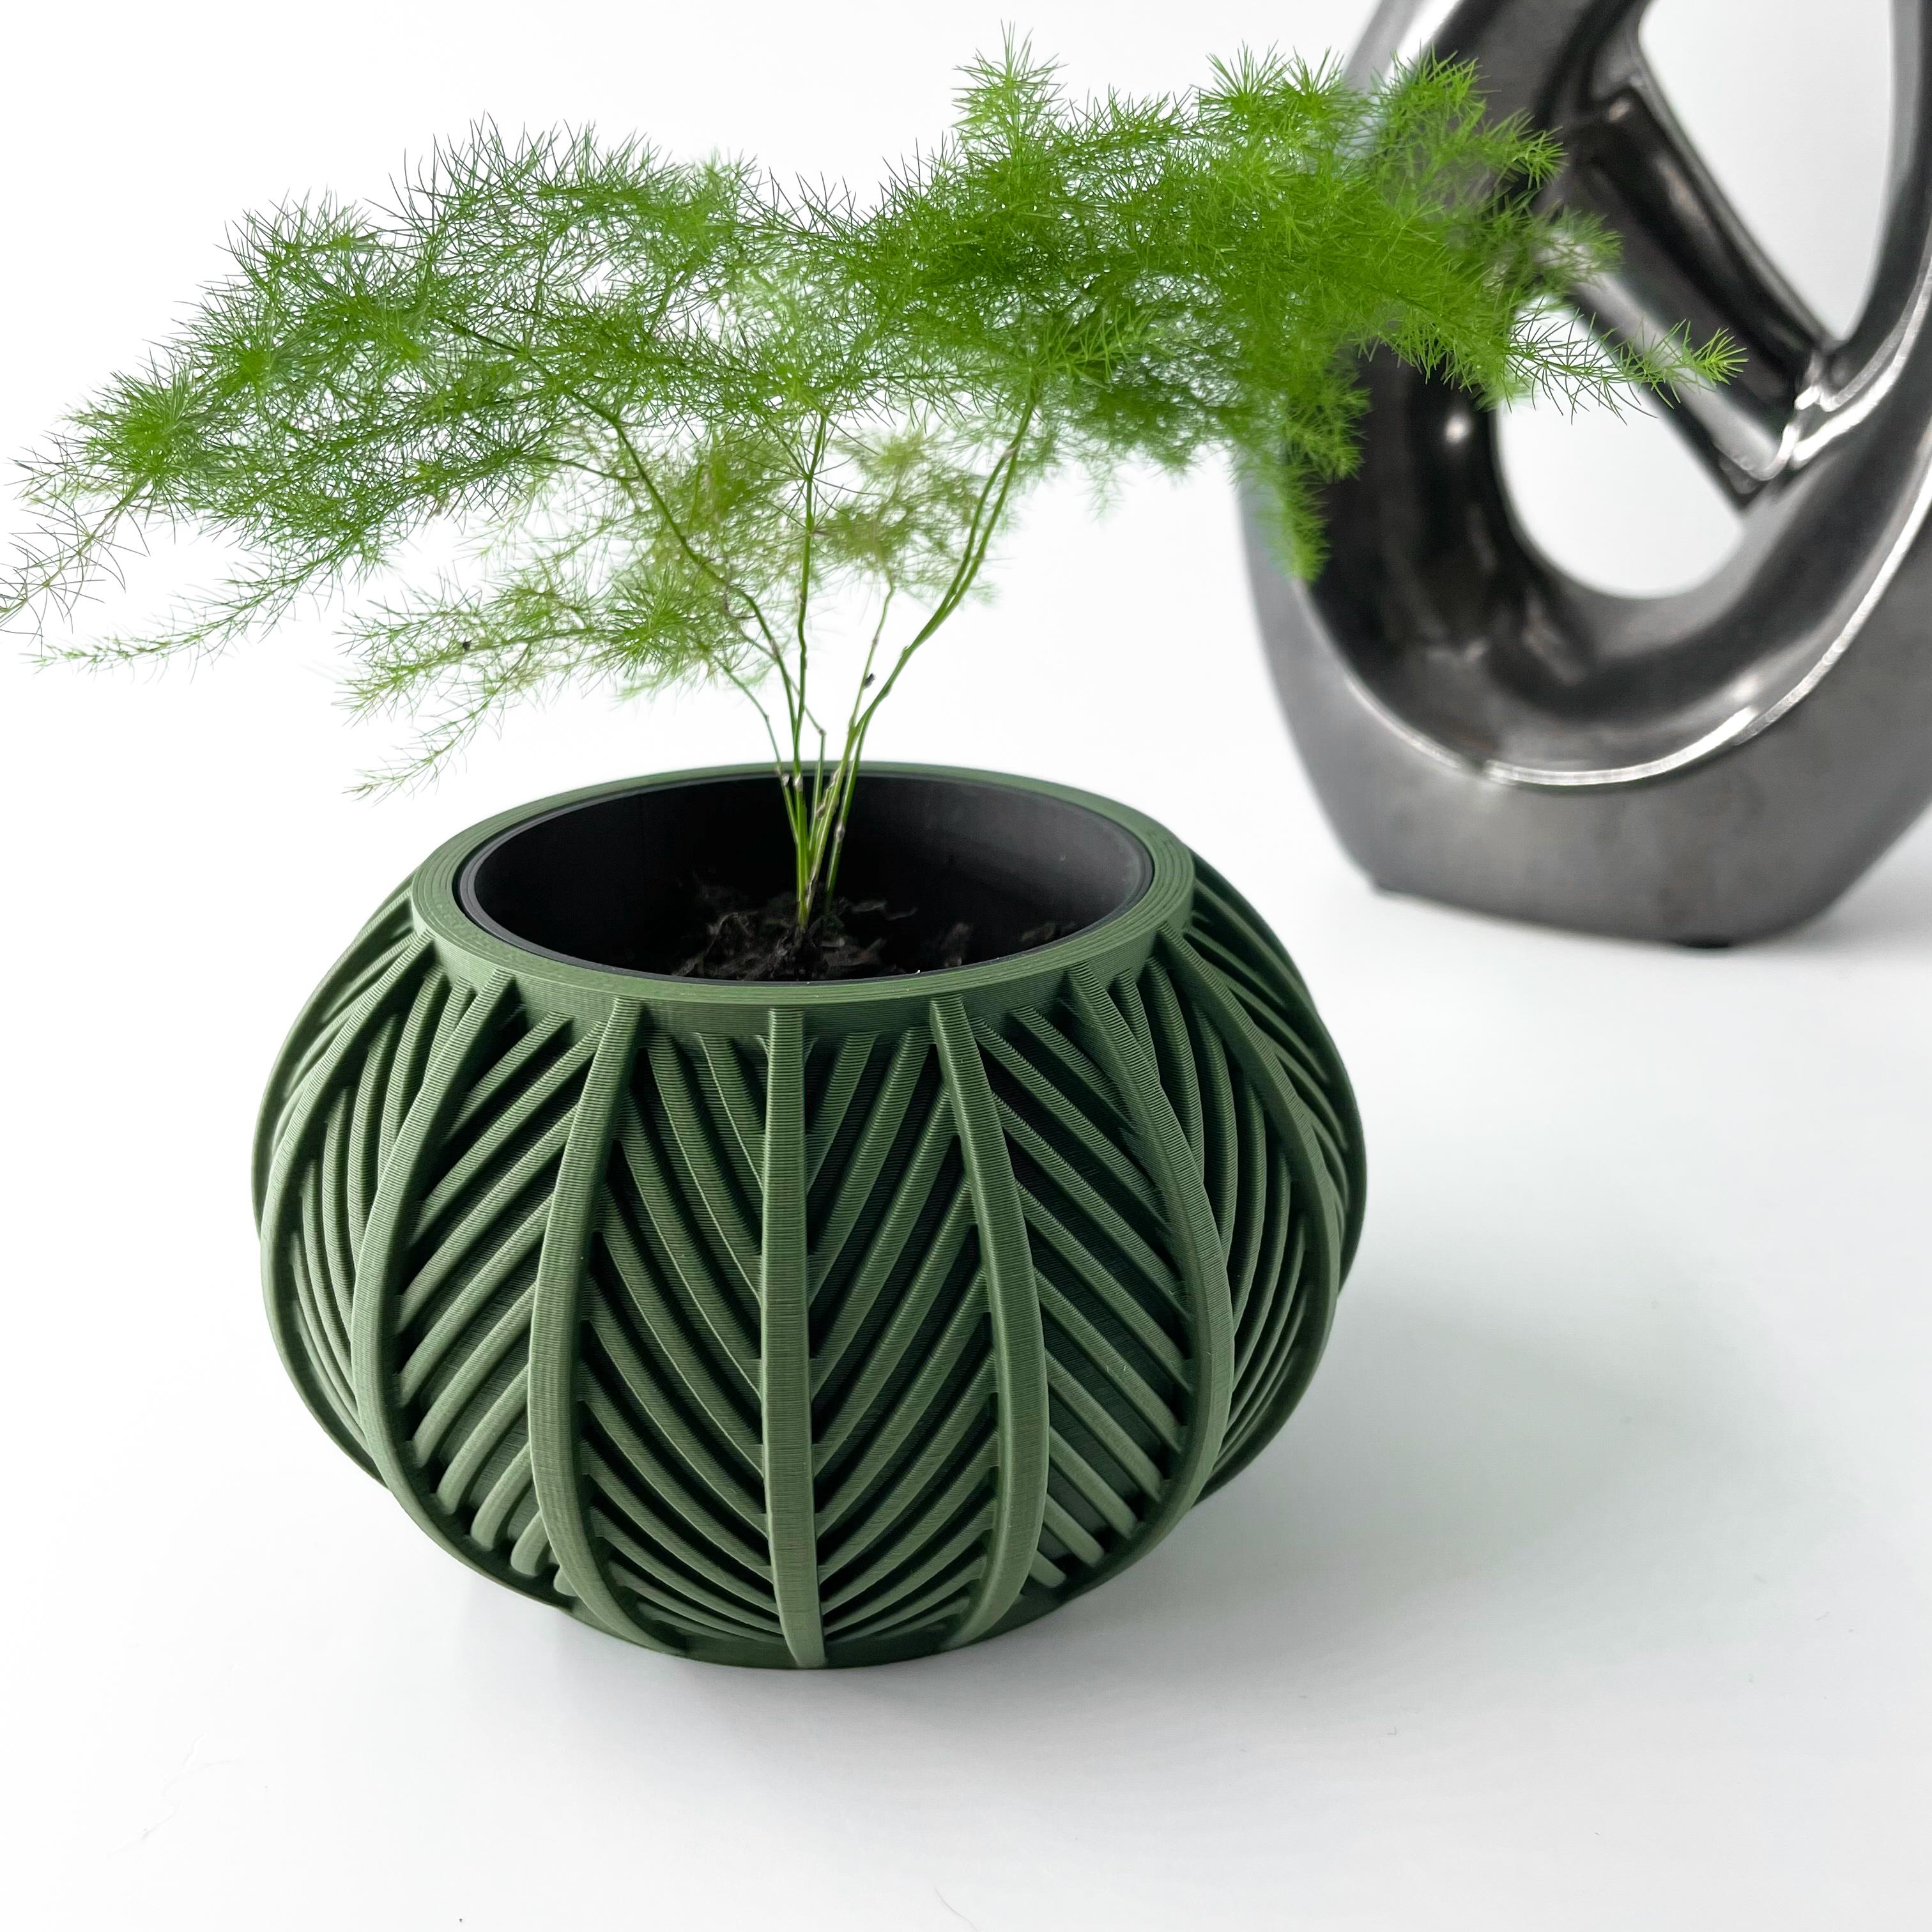 Magic 3D Plantes Vertes Vibrantes Bouquet de Fleurs Vases Grille